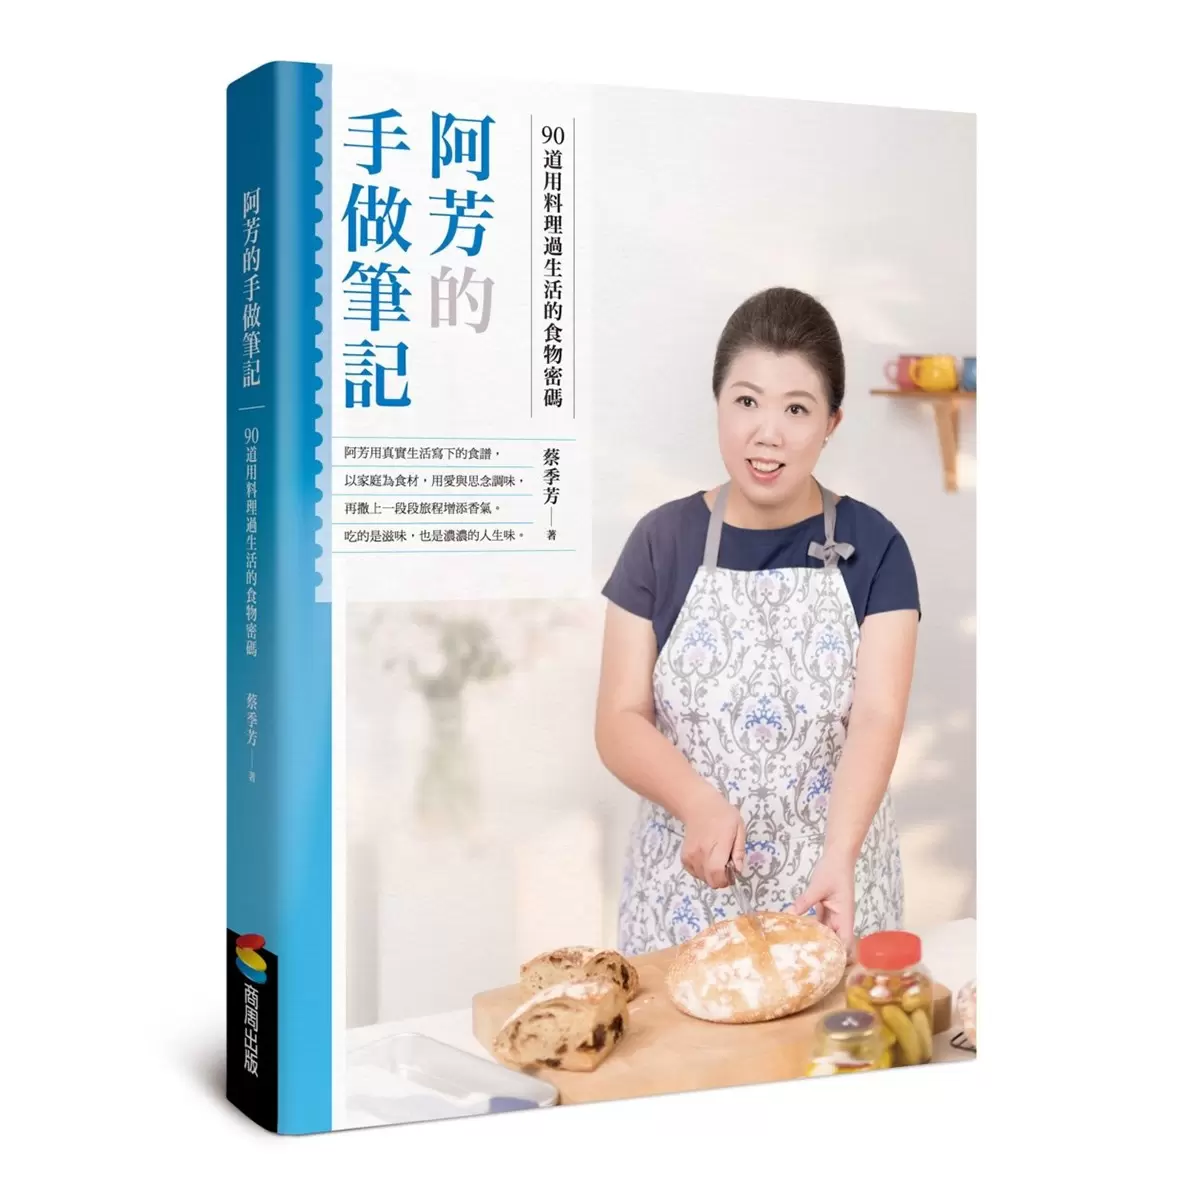 阿芳食譜套書: 阿芳的家庭料理筆記 + 阿芳的手做筆記 (2冊套書)